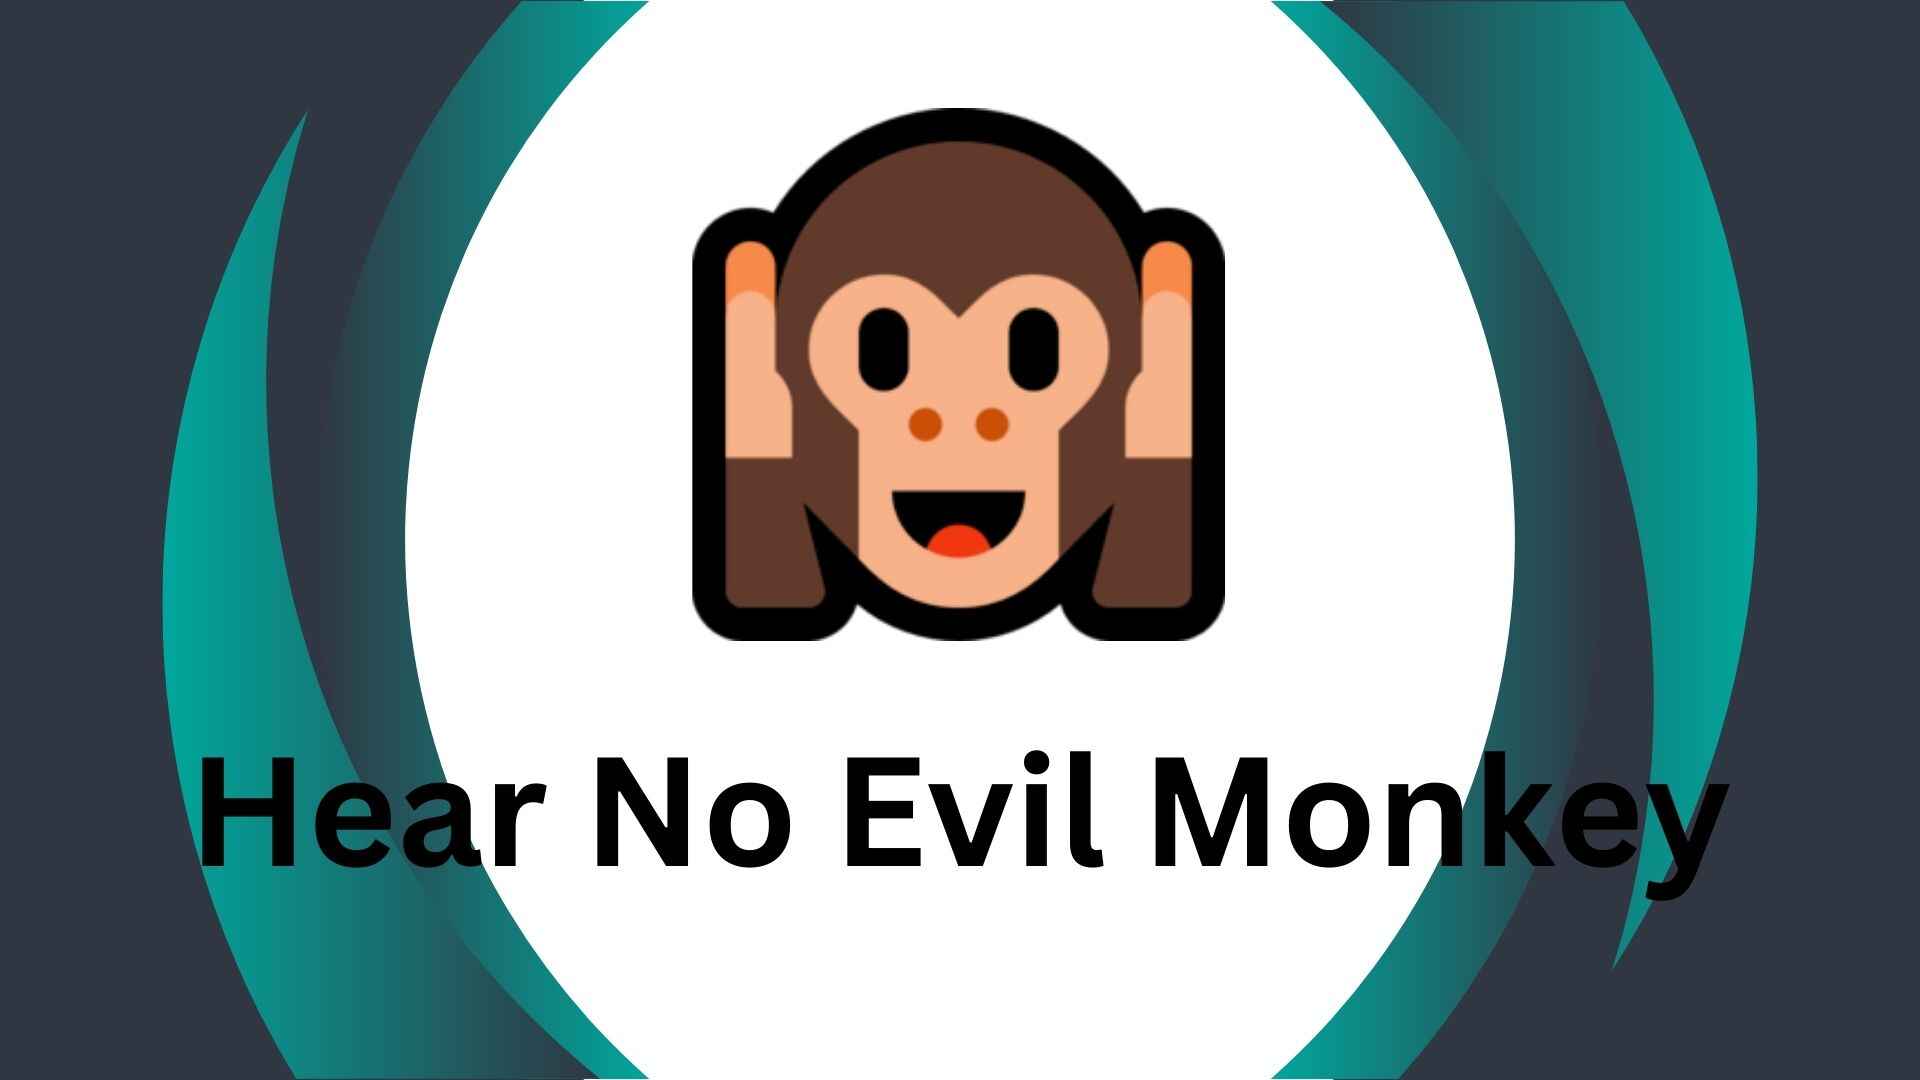 Hear No Evil Monkey